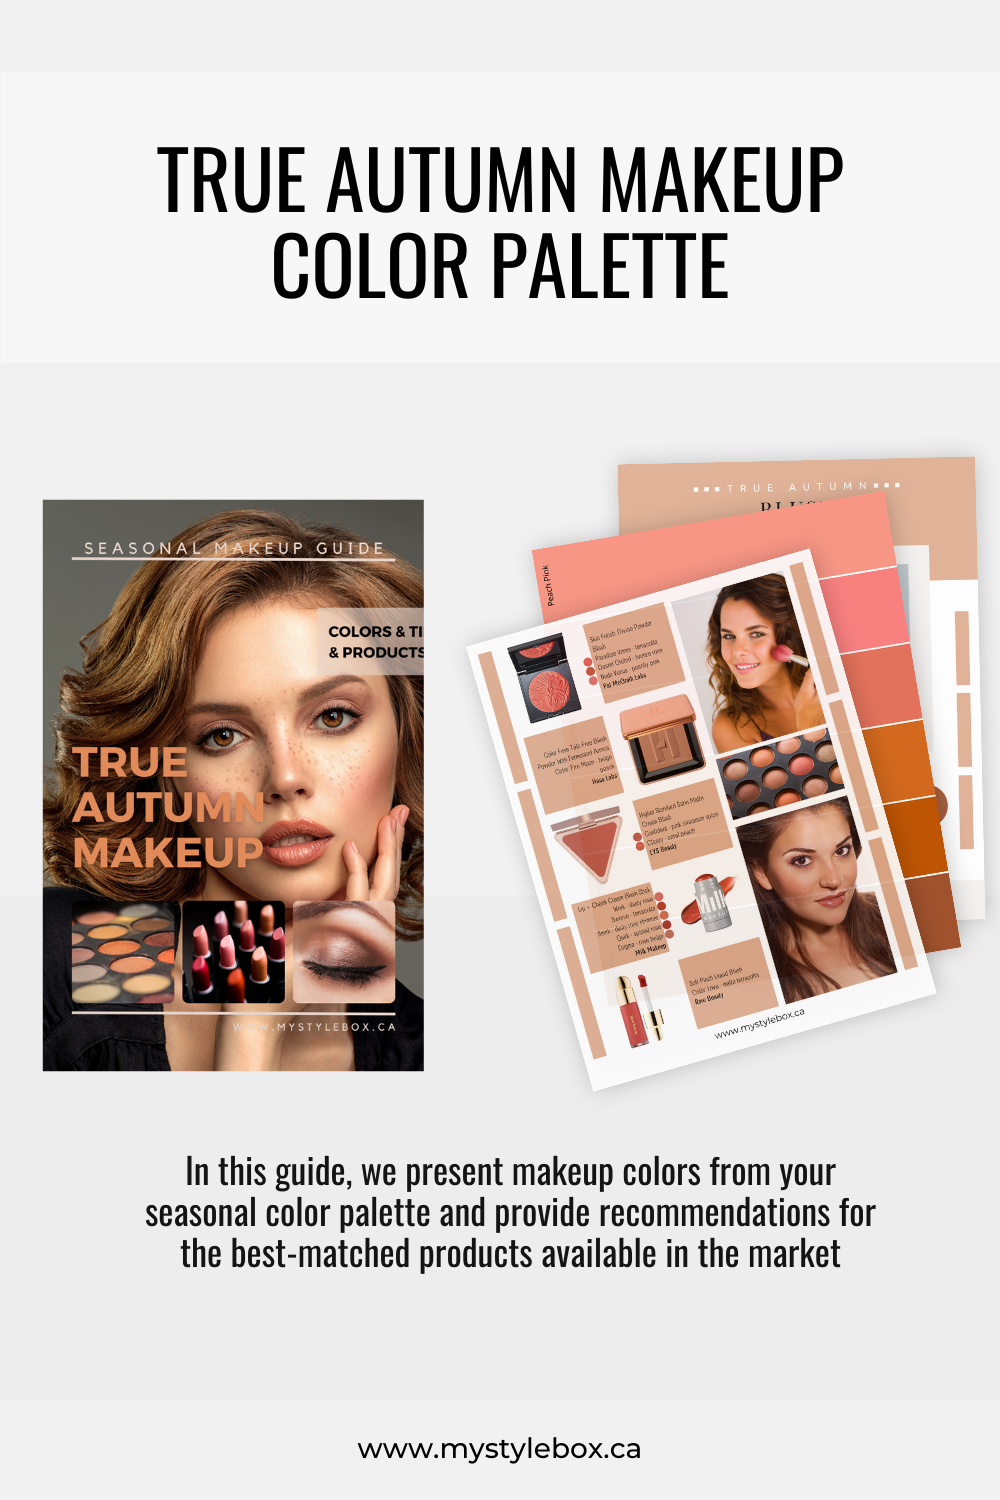 True (Warm) Autumn Color Season Makeup Guide